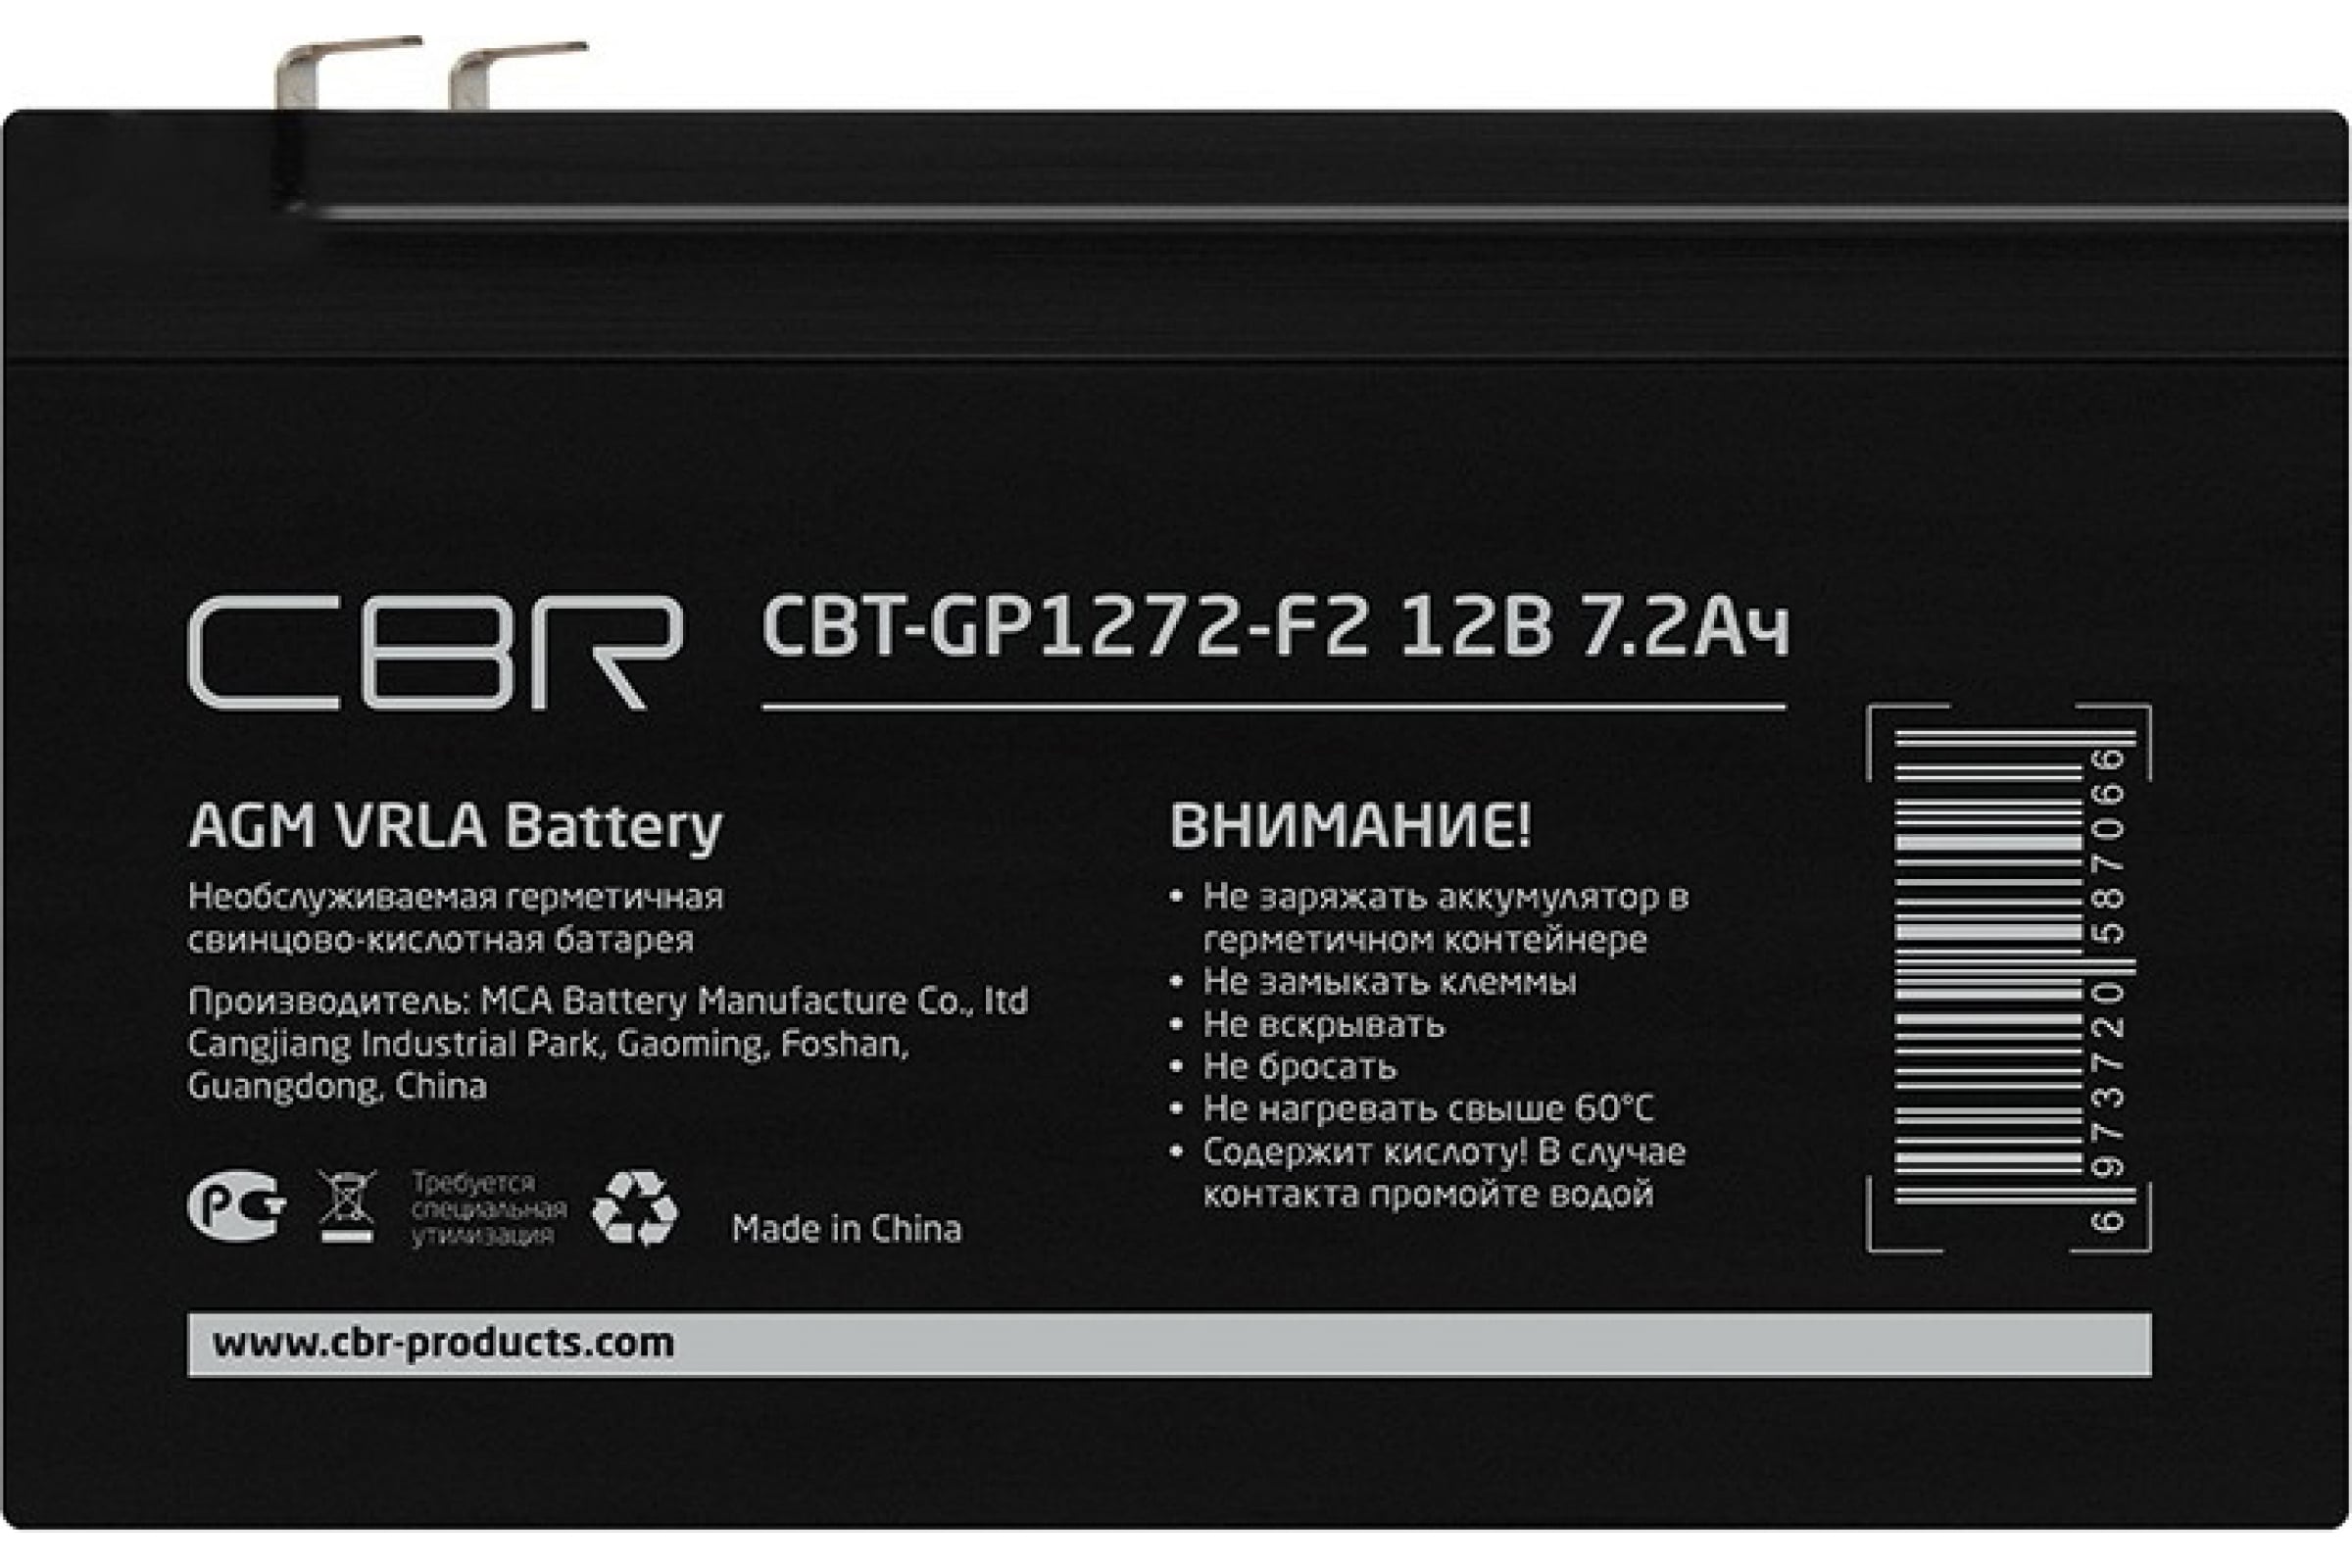 акк  CBR CBT-GP1272-F2 аккумуляторная VRLA батарея  (12В 7.2Ач), клеммы F2